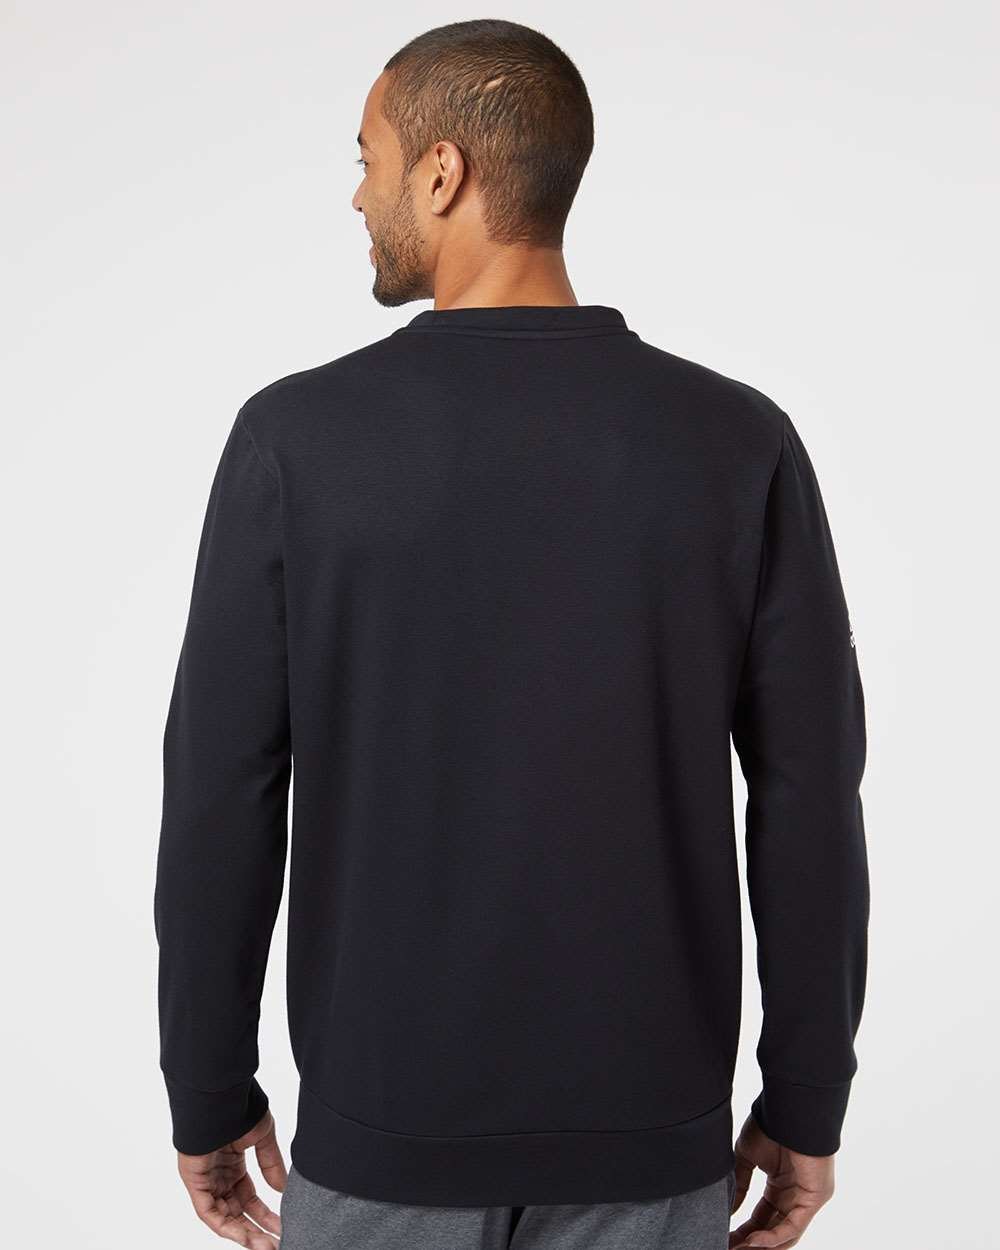 Adidas A434 Fleece Crewneck Sweatshirt #colormdl_Black